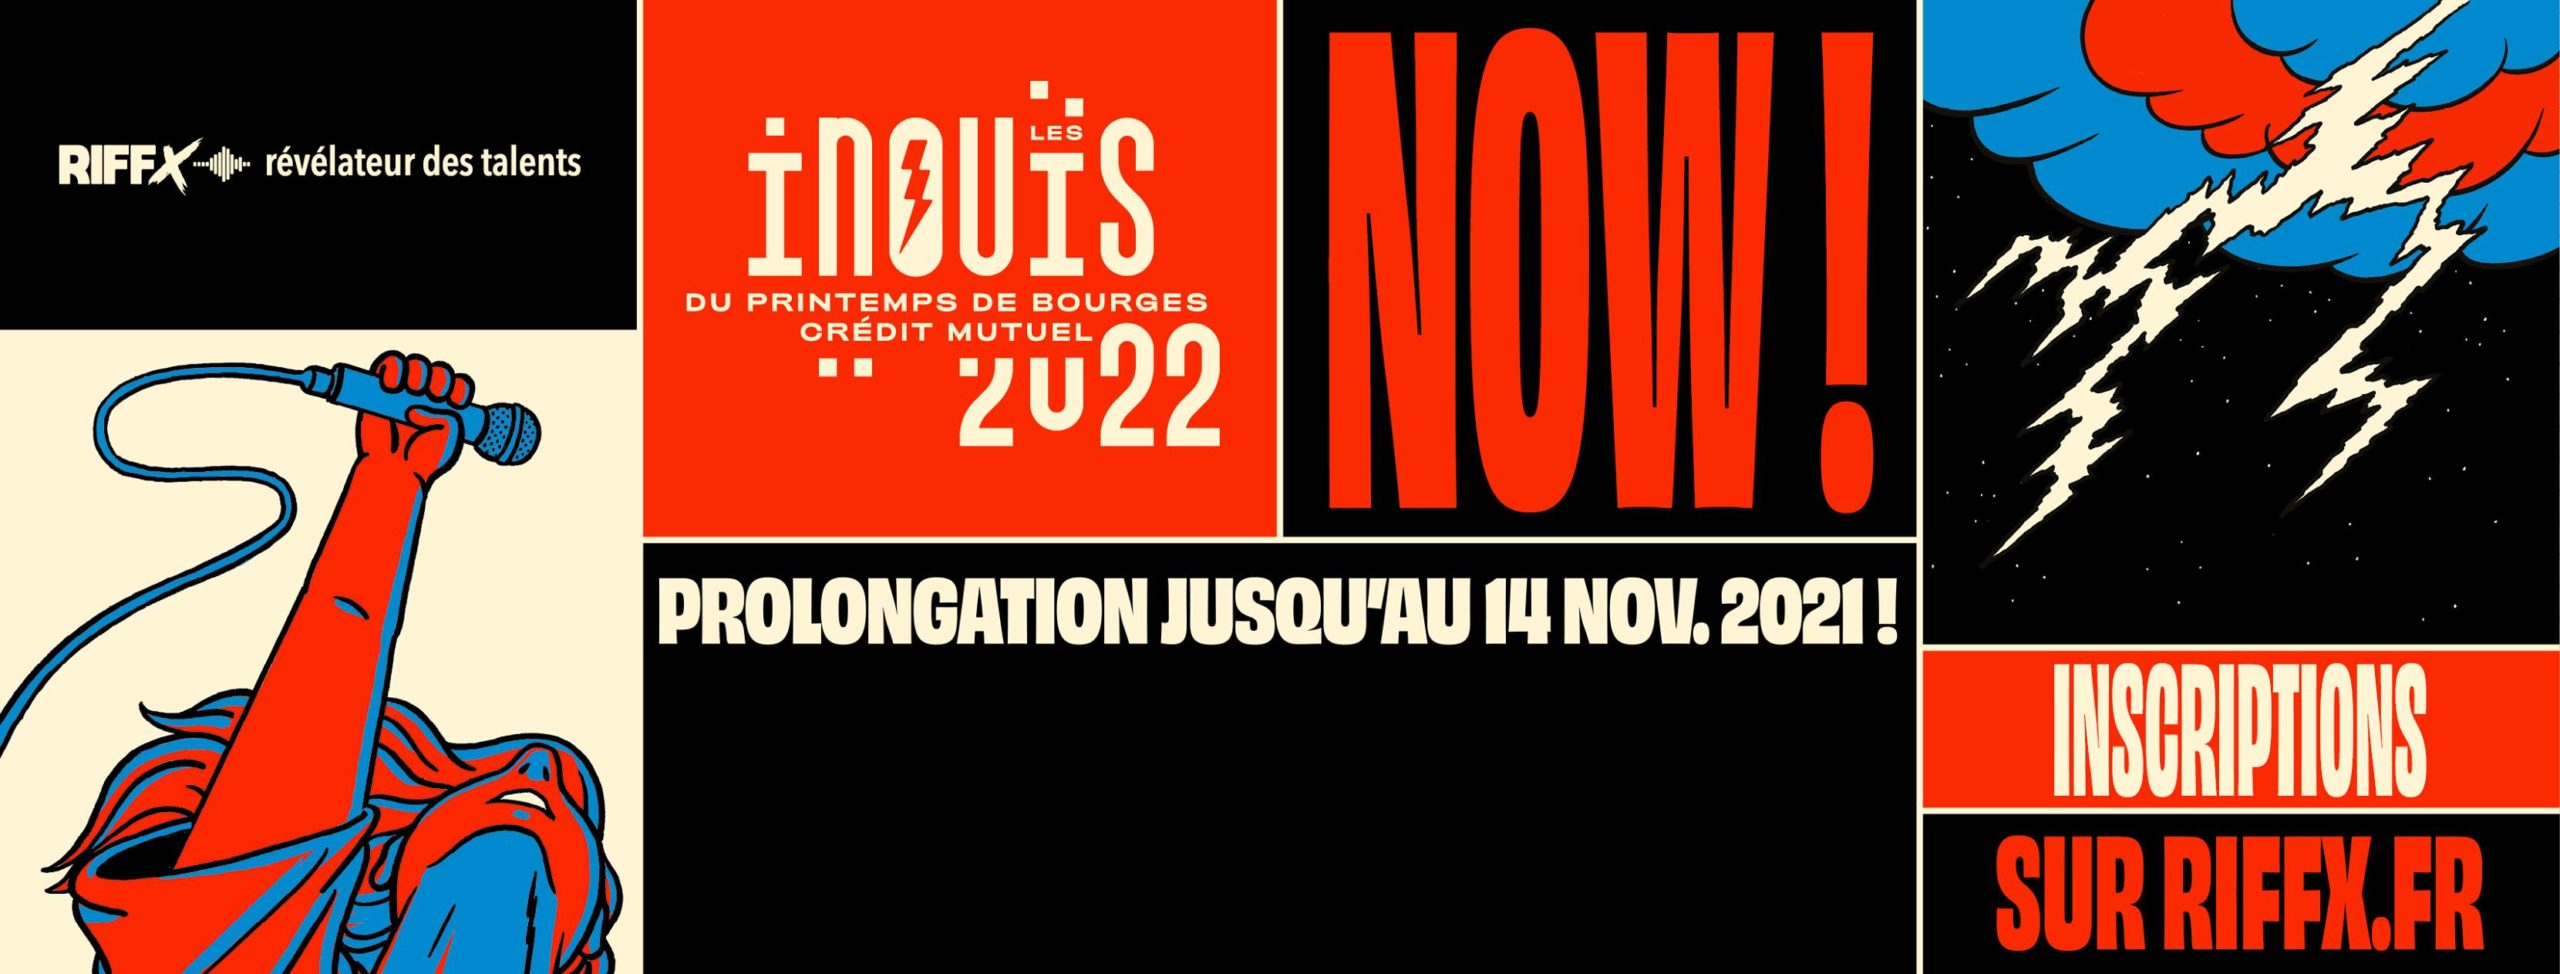 les inouis 2022 scaled Les Inouïs : L'appel à candidatures se termine le 14 novembre